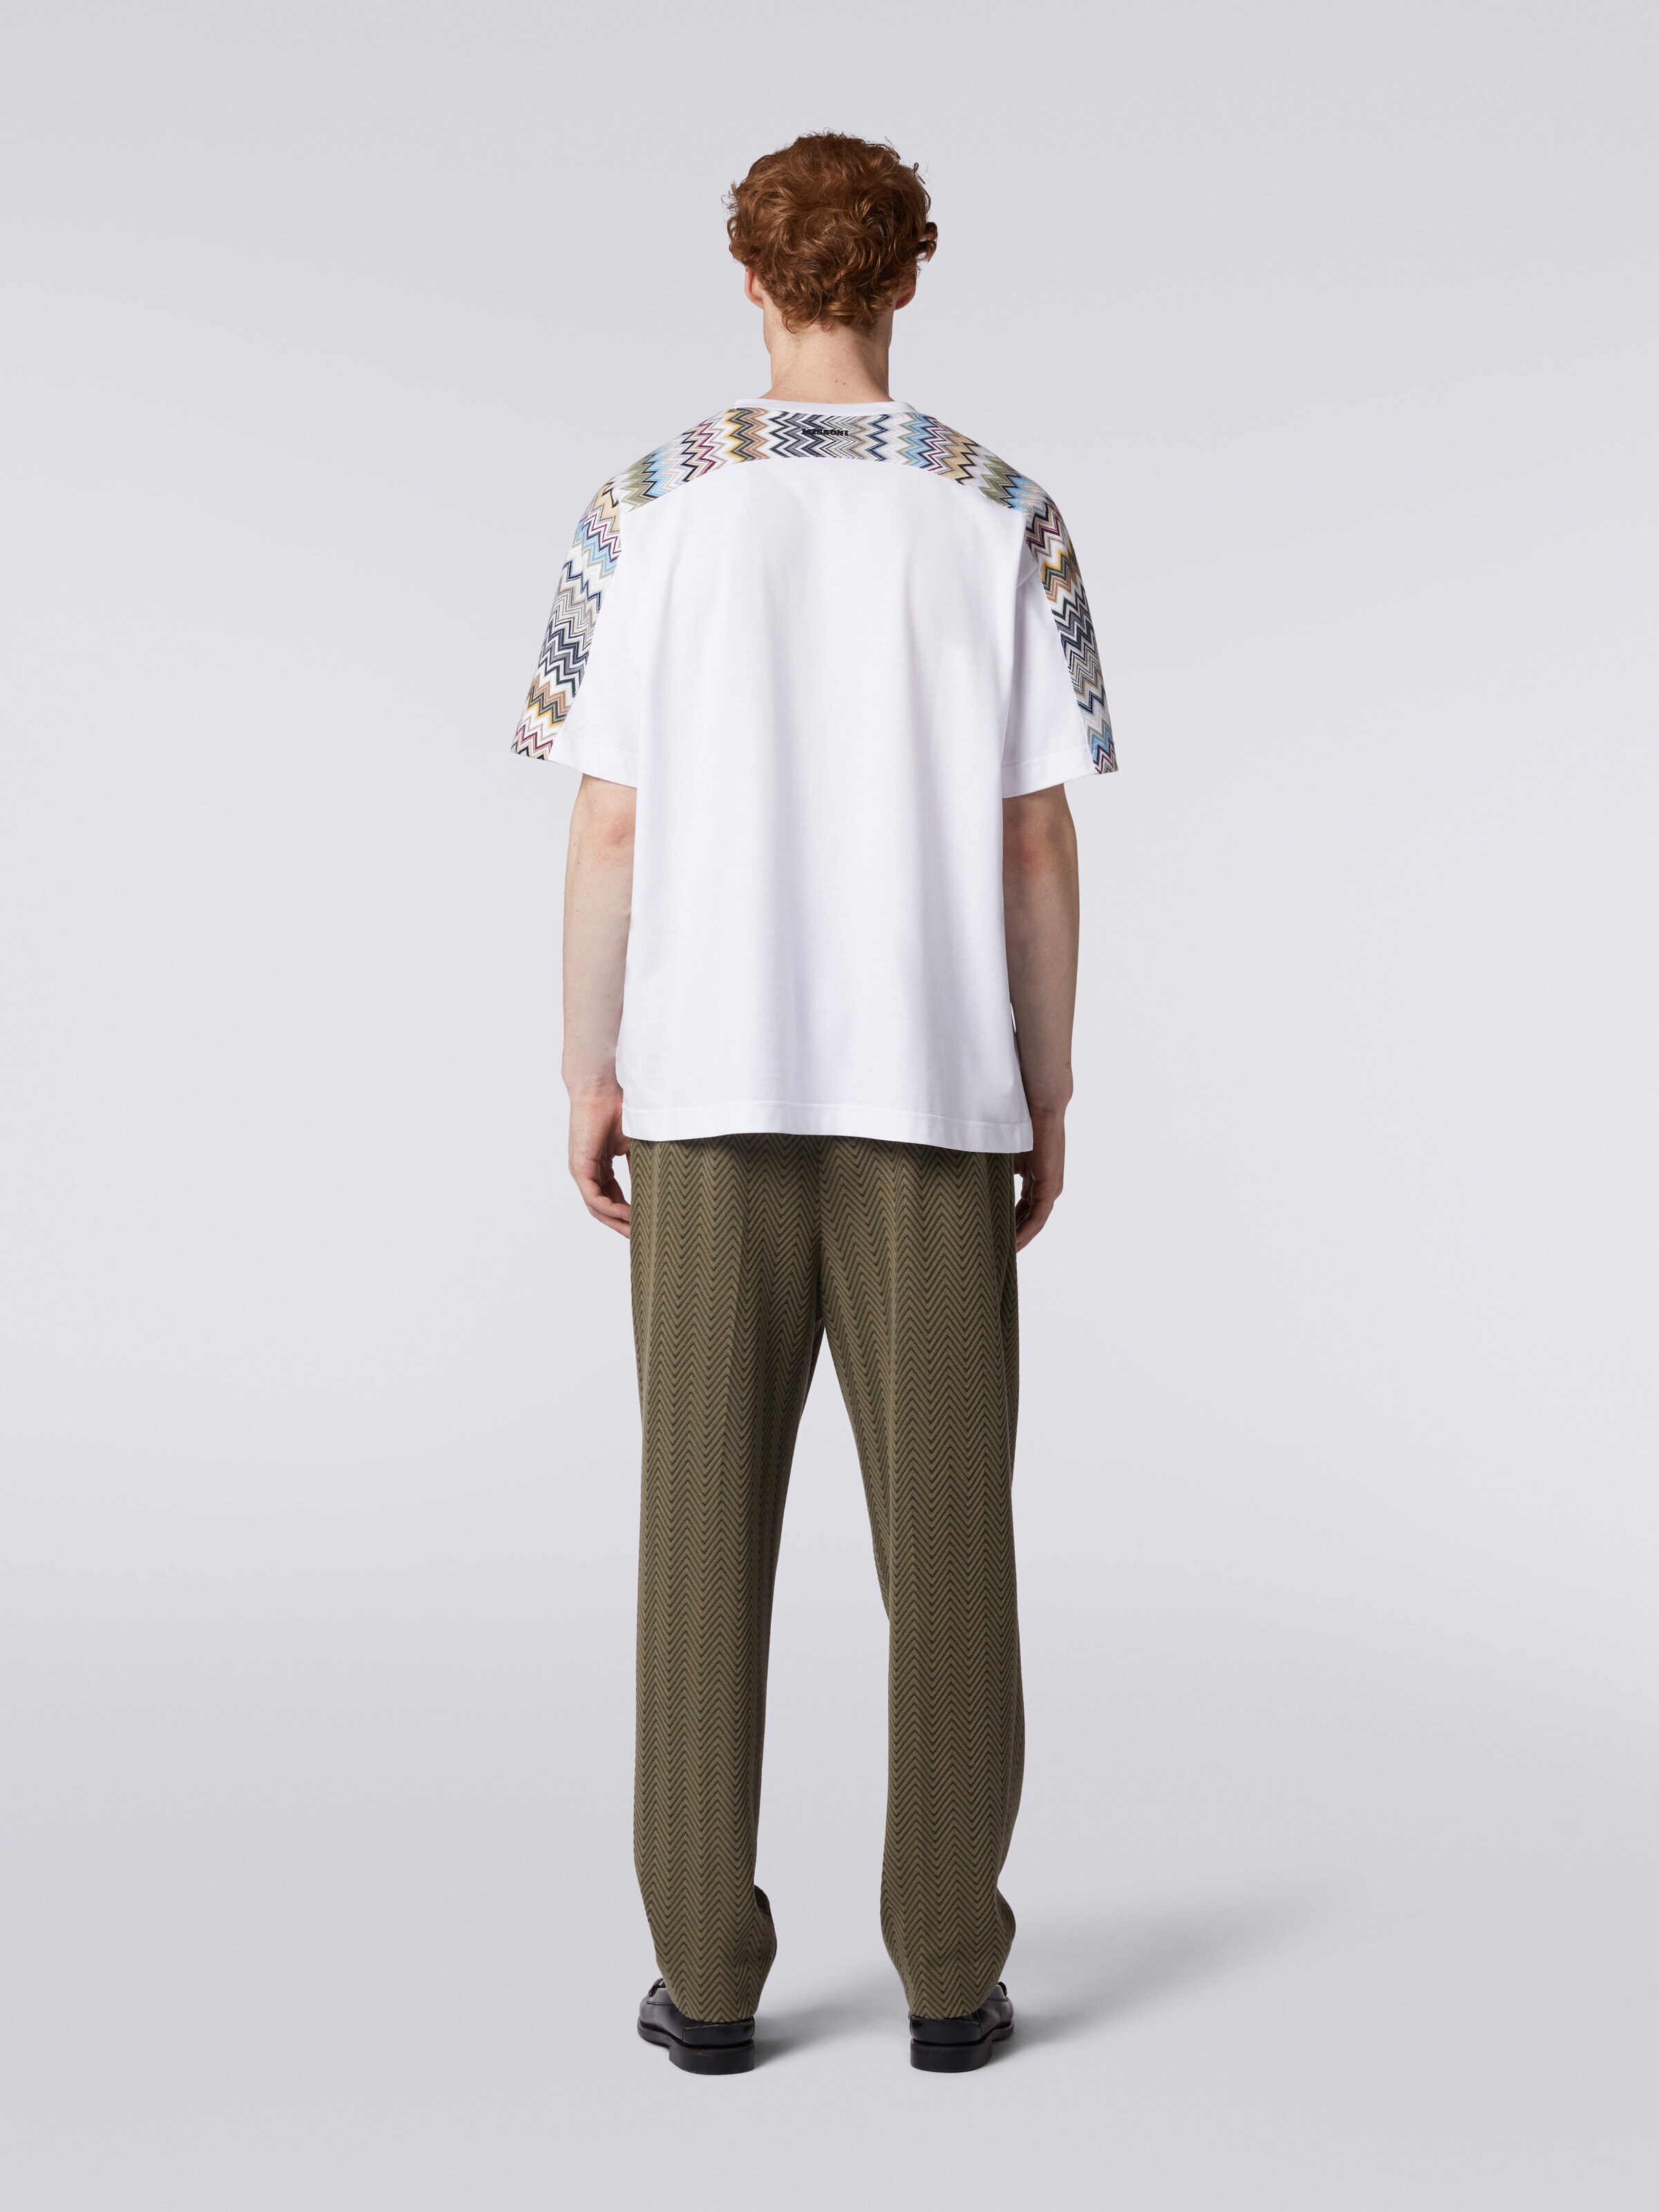 Camiseta de algodón con inserciones zigzag, Multicolor  - 3